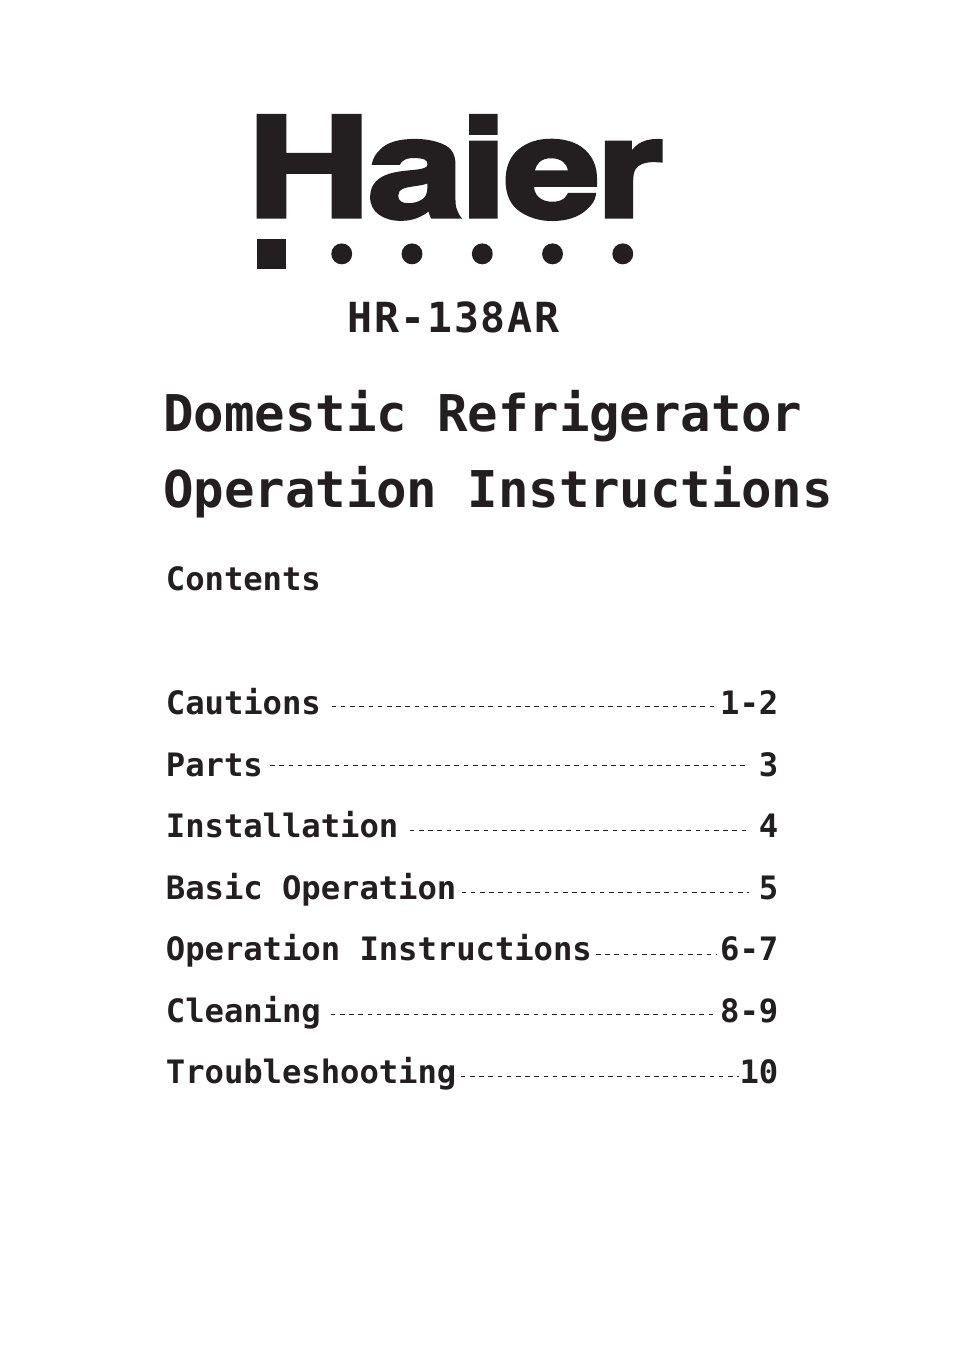 HR-138AR